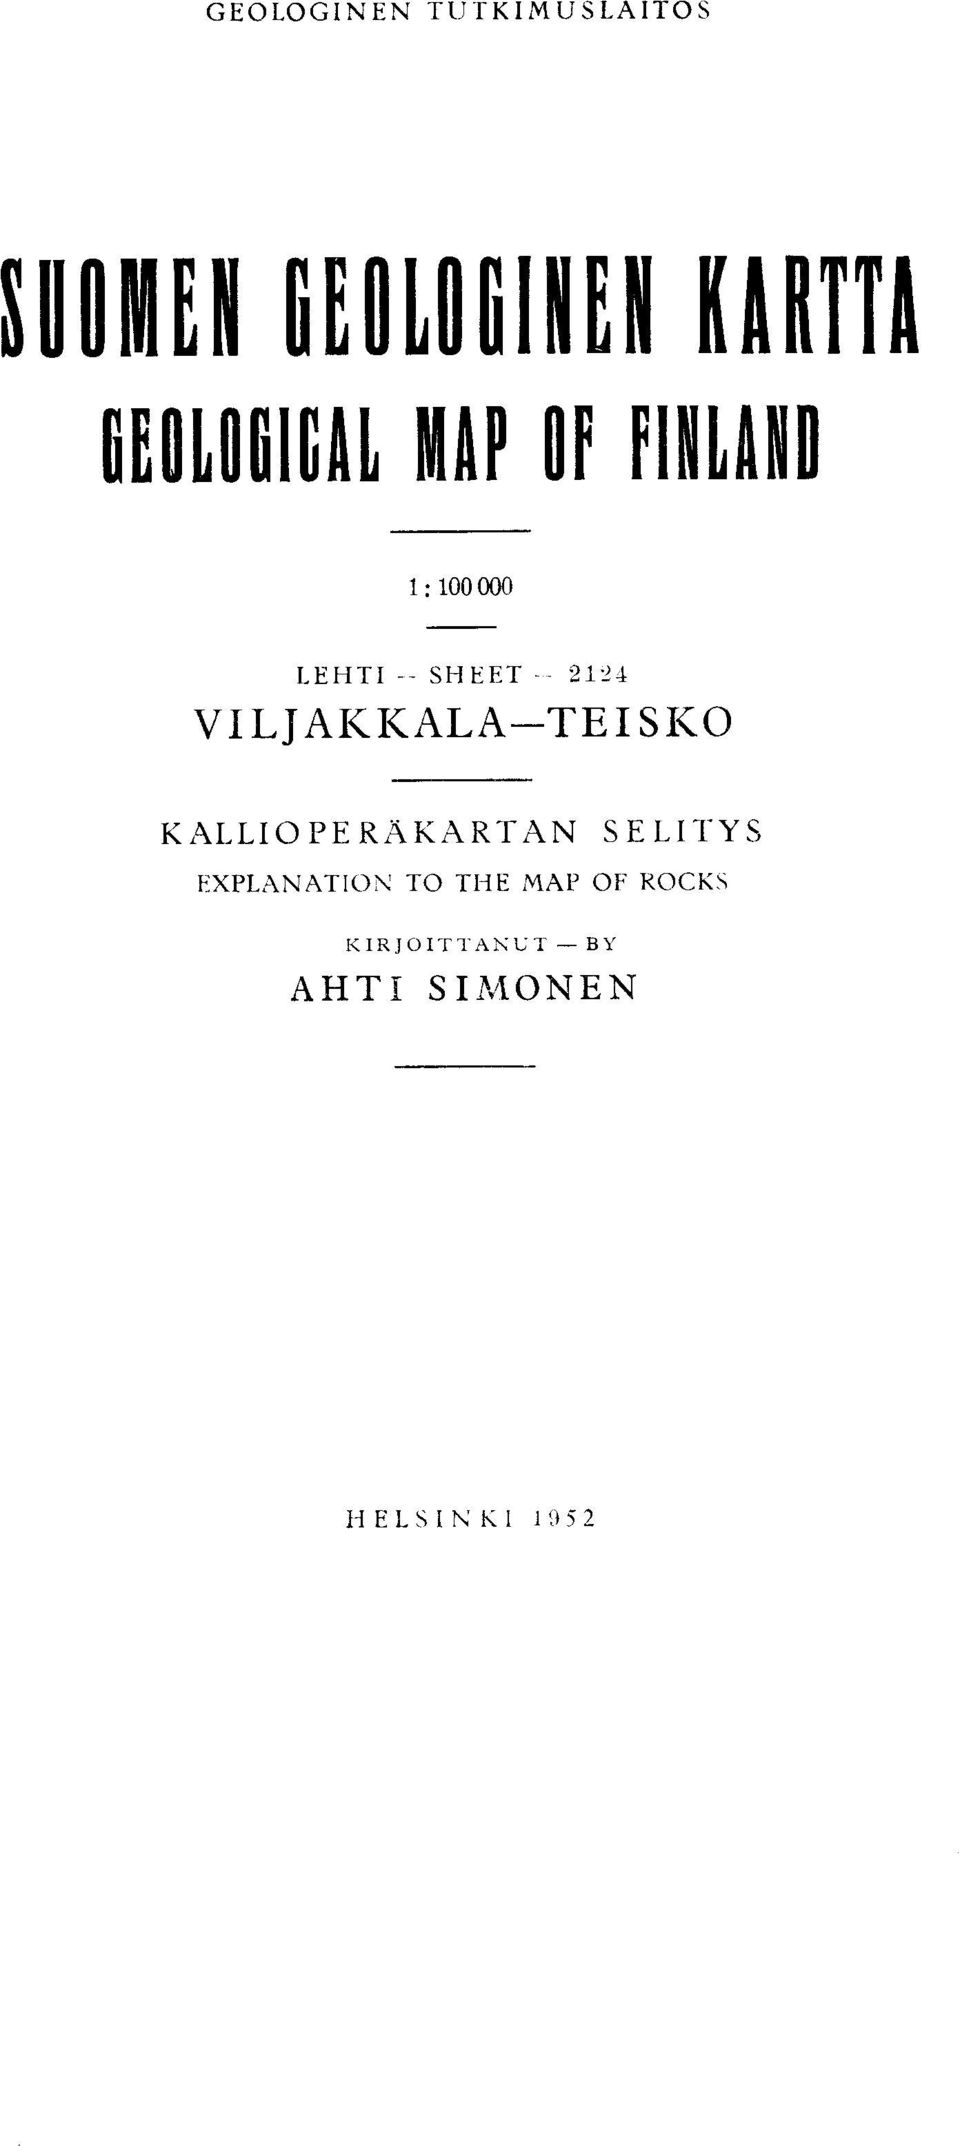 2124 VILJAKKALA-TEISKO KALLIOPERAKARTAN SELITYS